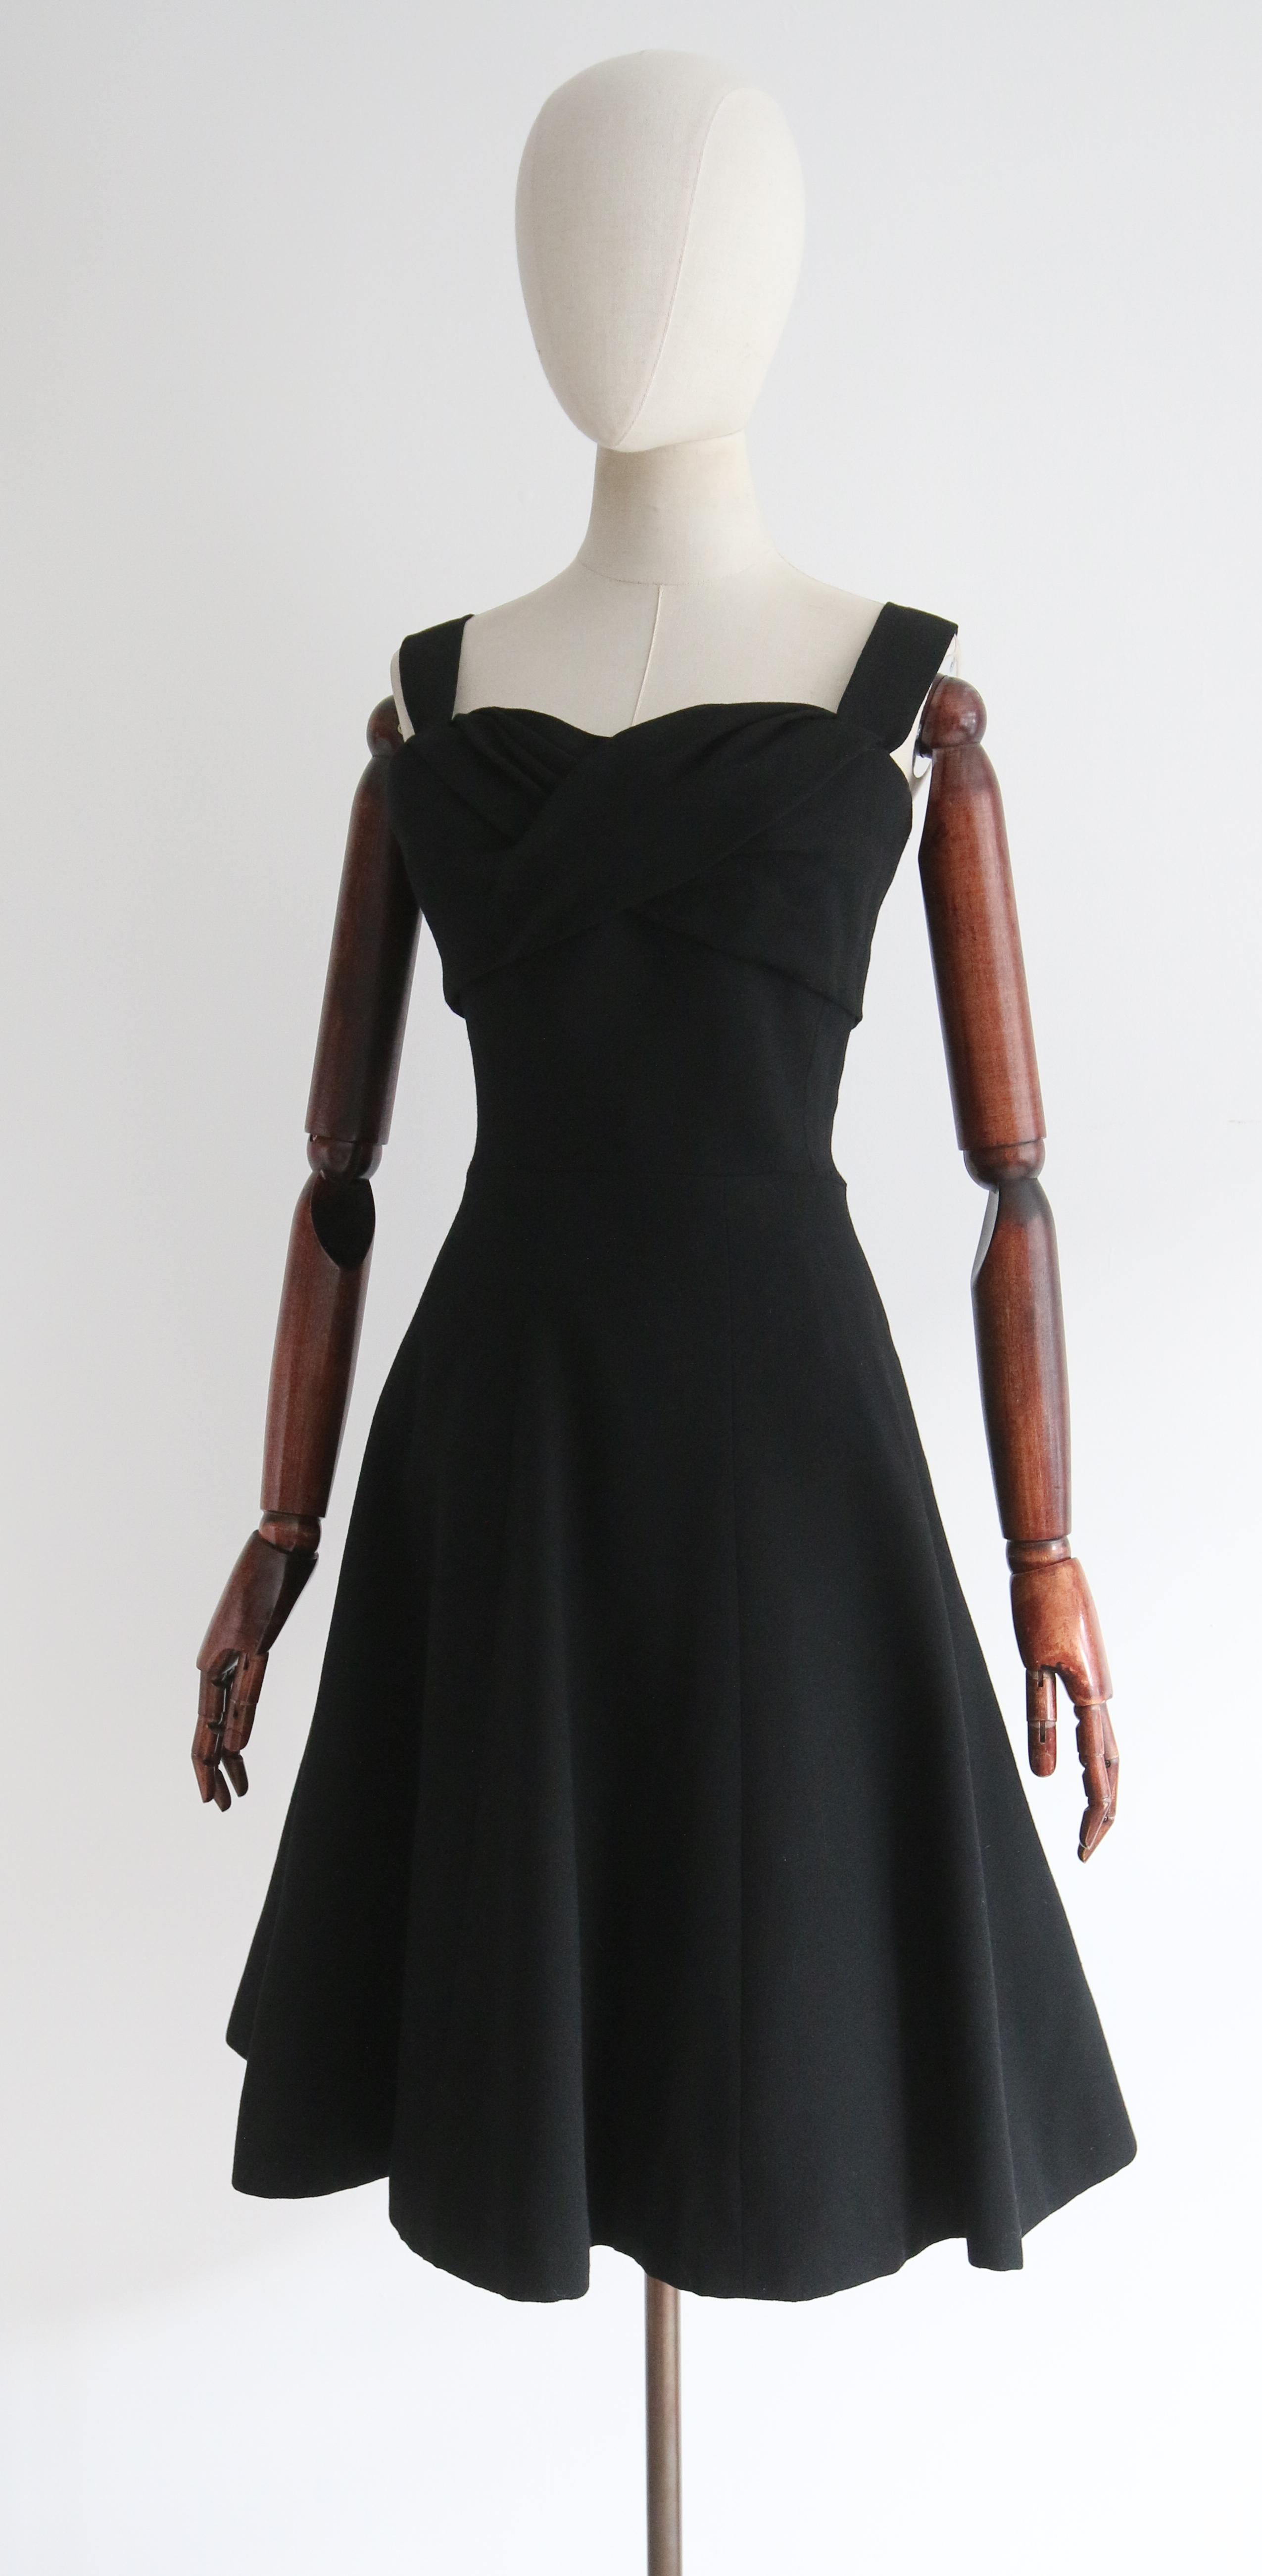  Vintage Late 1950's Black Christian Dior Dress UK 8 US 4 For Sale 3